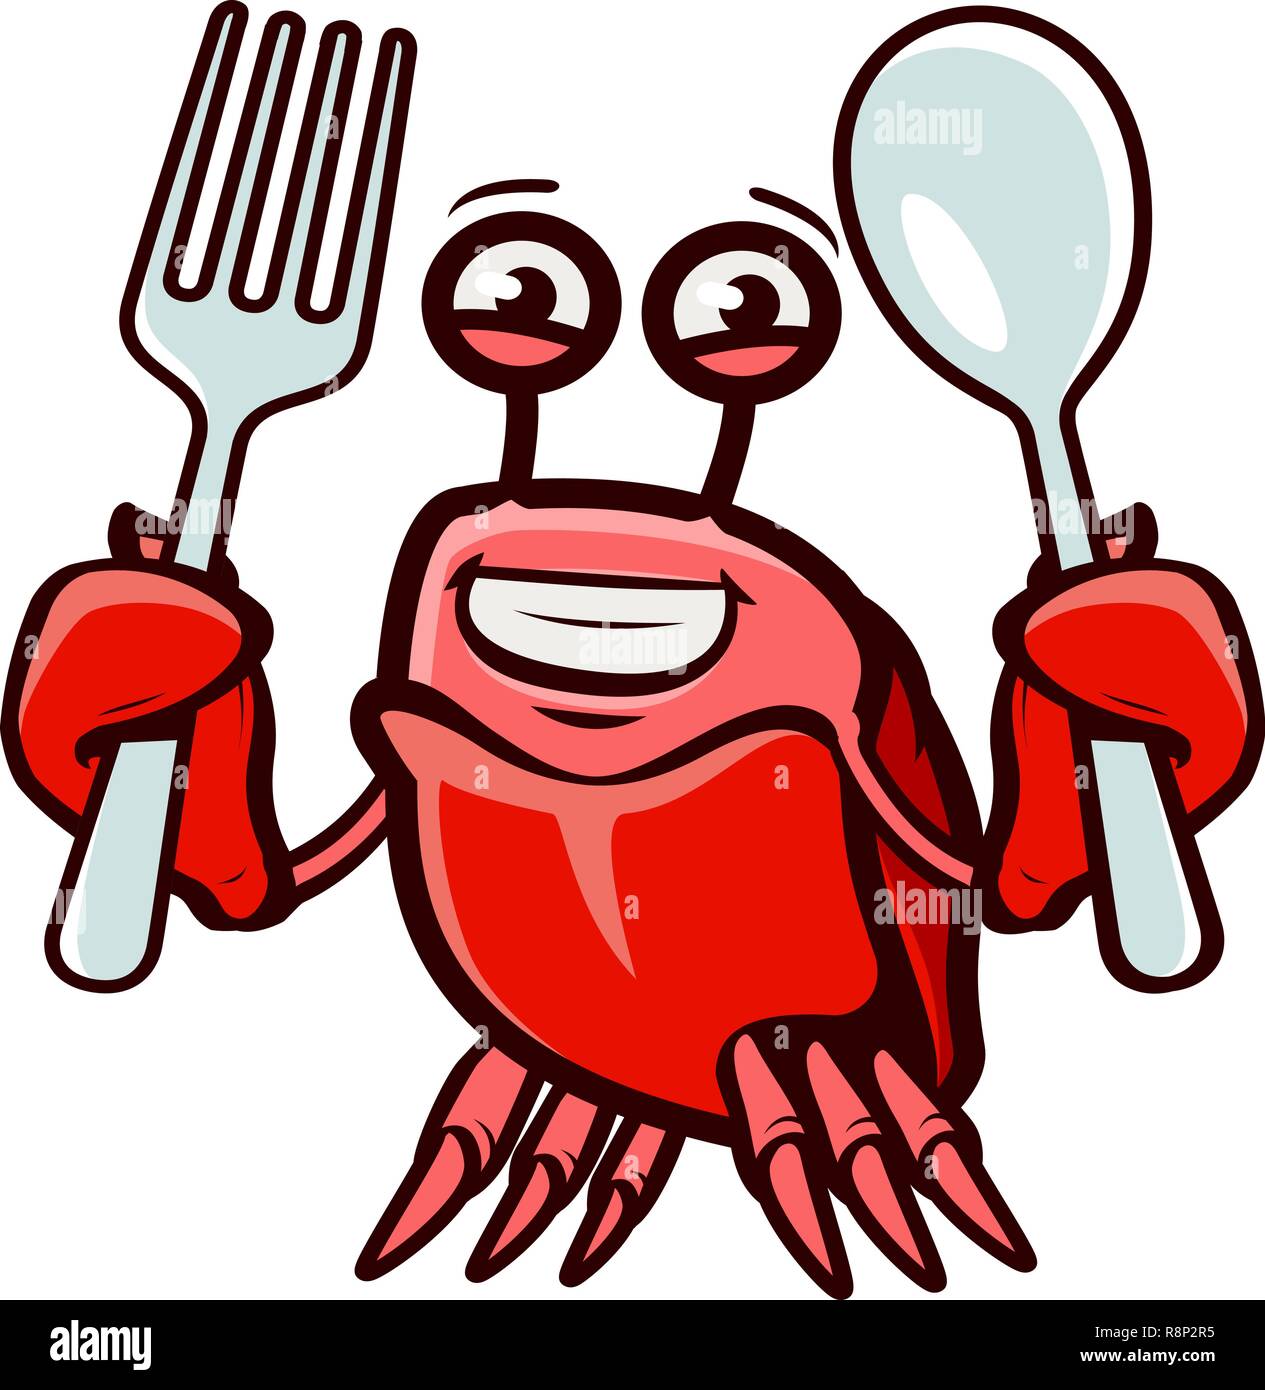 Contient du crabe fourchette et cuillère. Fruits de mer, cartoon vector illustration Illustration de Vecteur